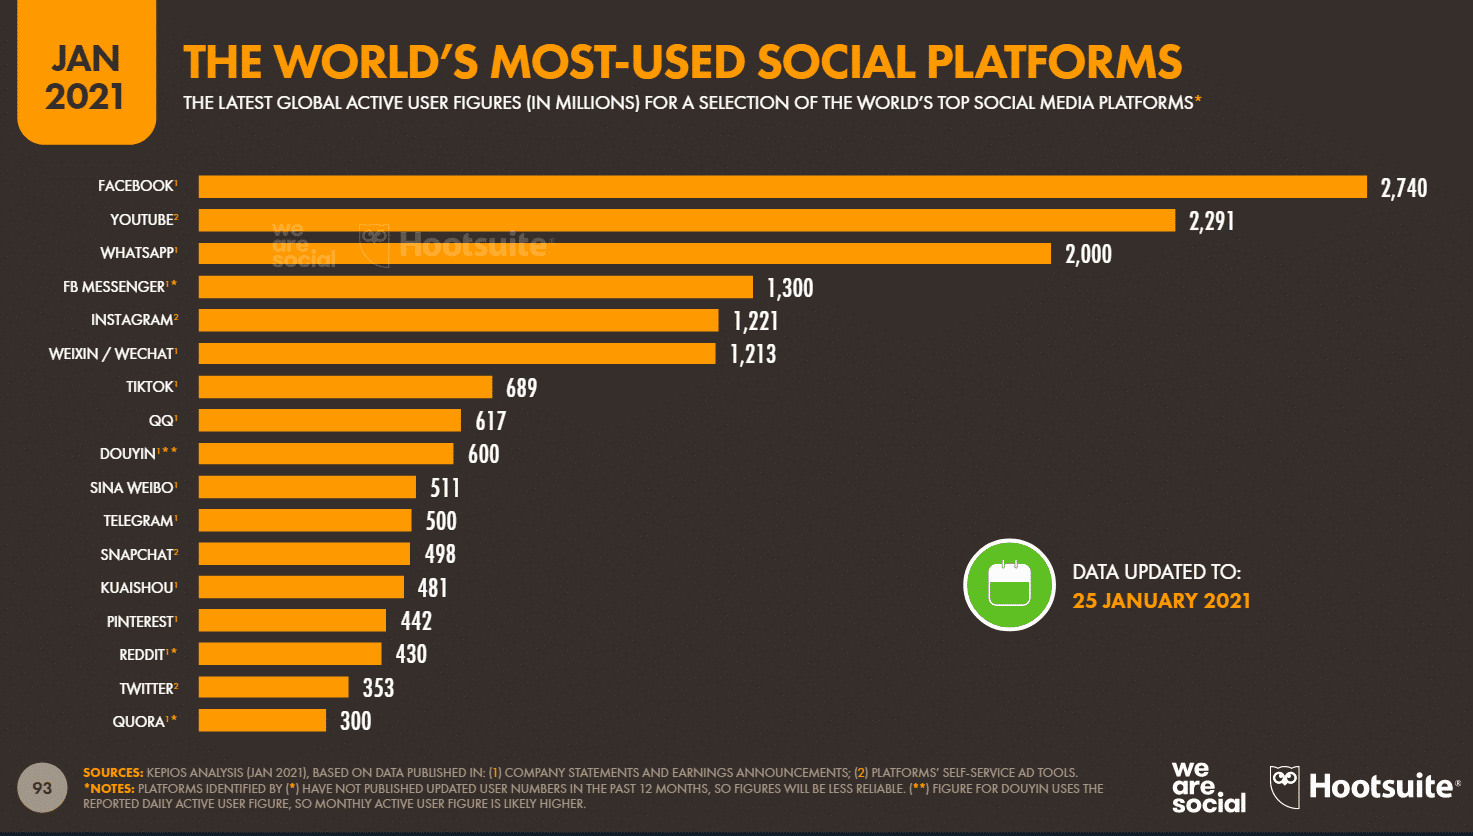 popular social media platforms